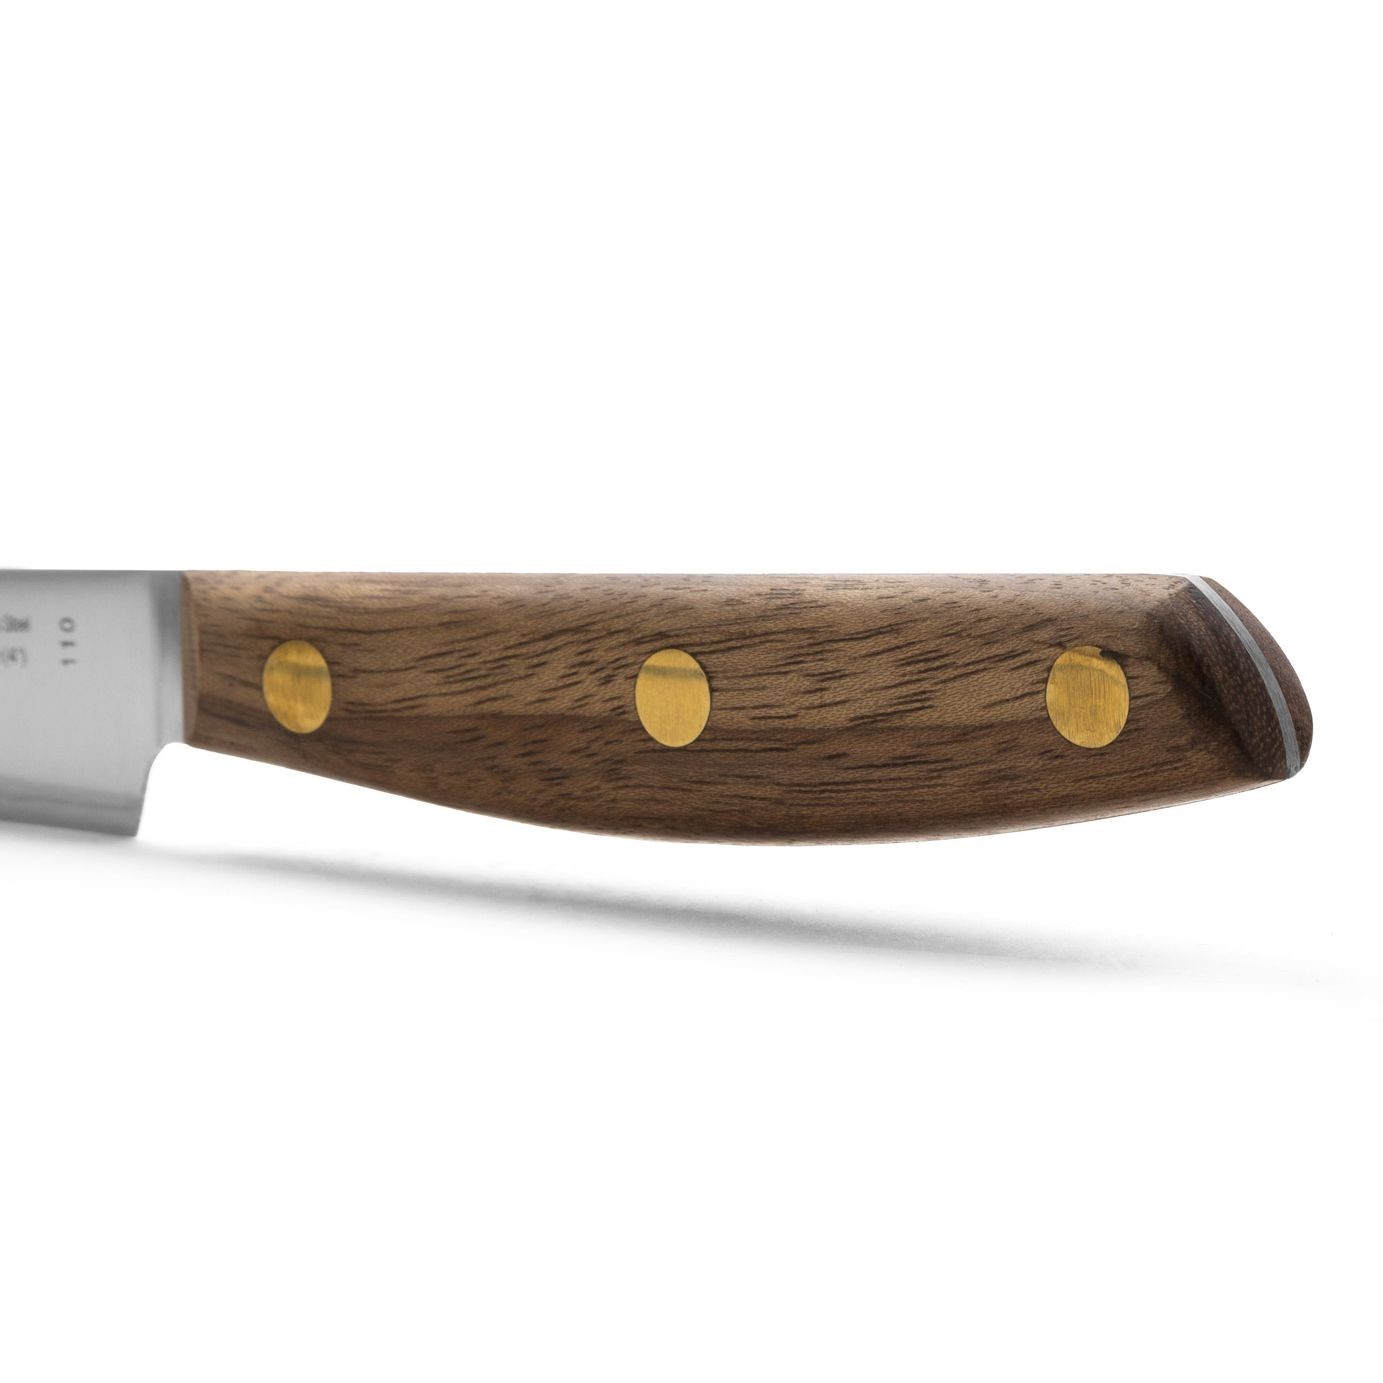 Cuchillo cocinero de 21 cm, Arcos Nórdika